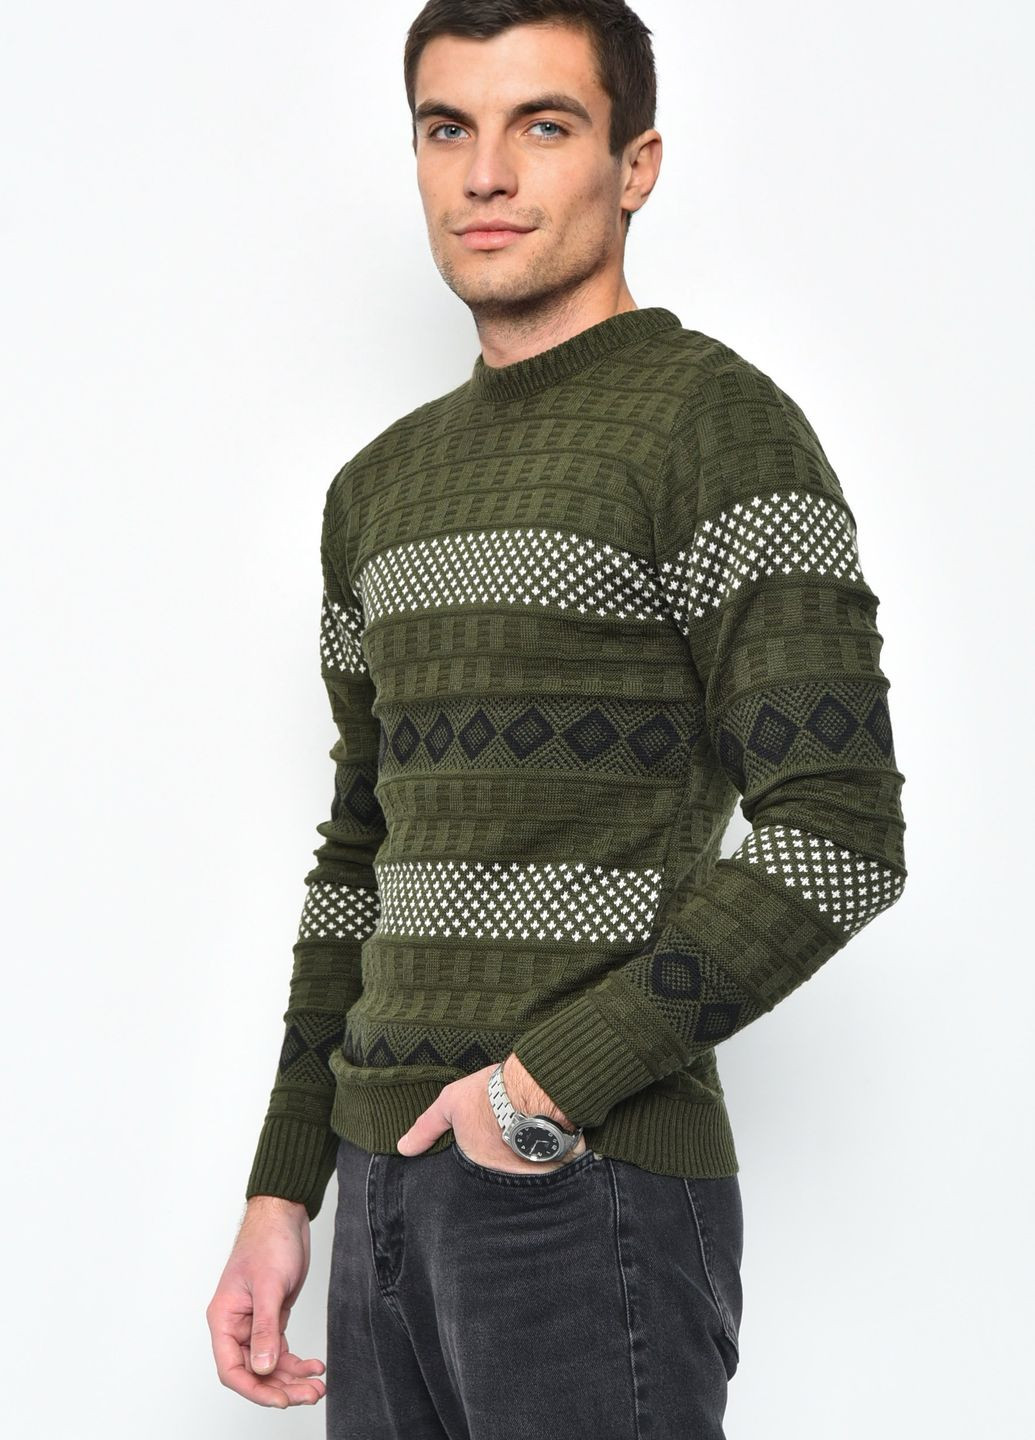 Зеленый демисезонный свитер мужской зеленого цвета акриловый пуловер Let's Shop